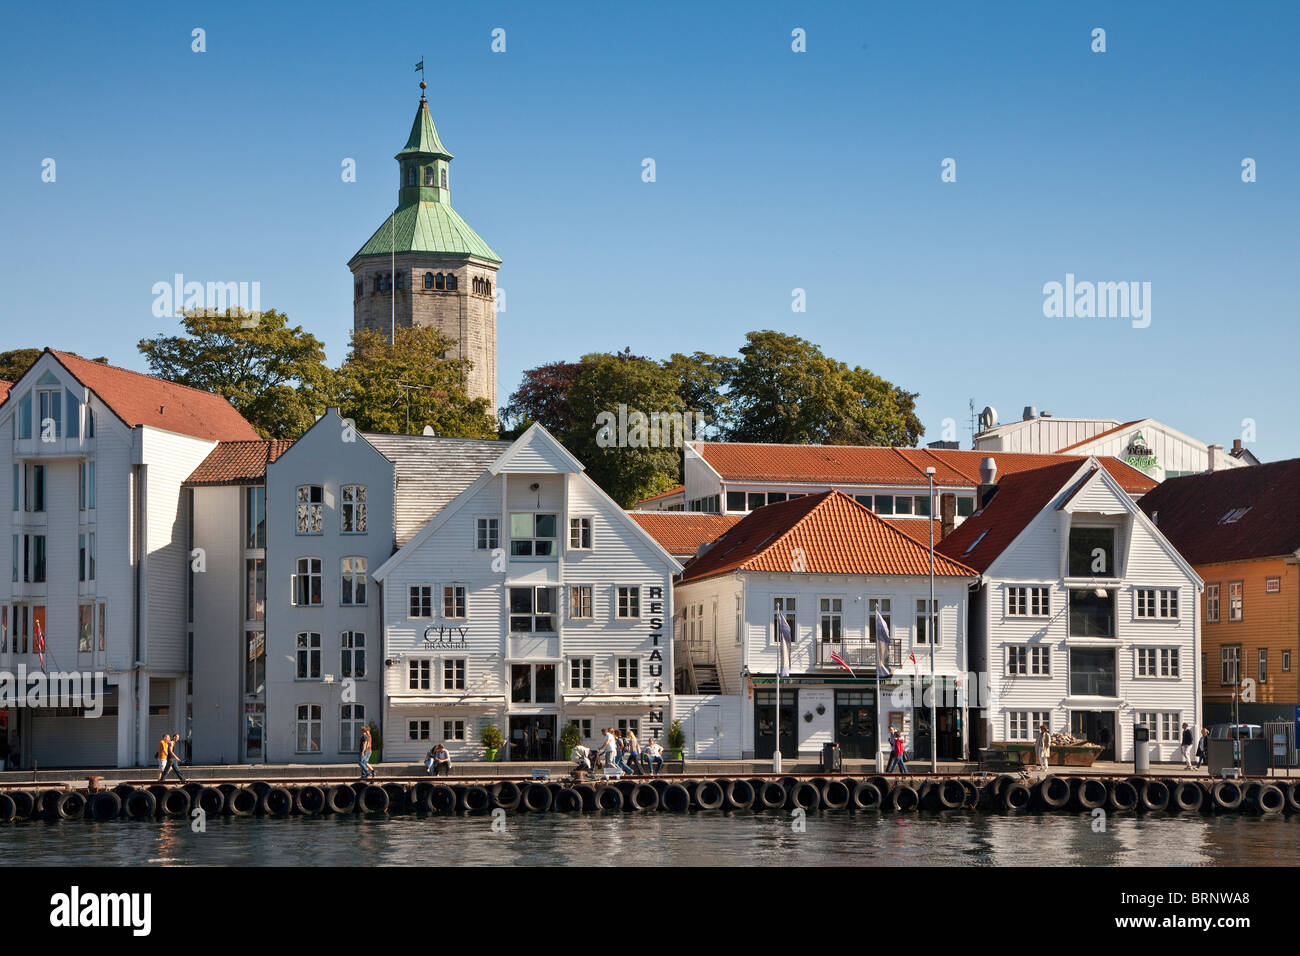 Gamle Stavanger, parte della vecchia città di Stavanger, bianco imbarcati case, scena del porto Foto Stock